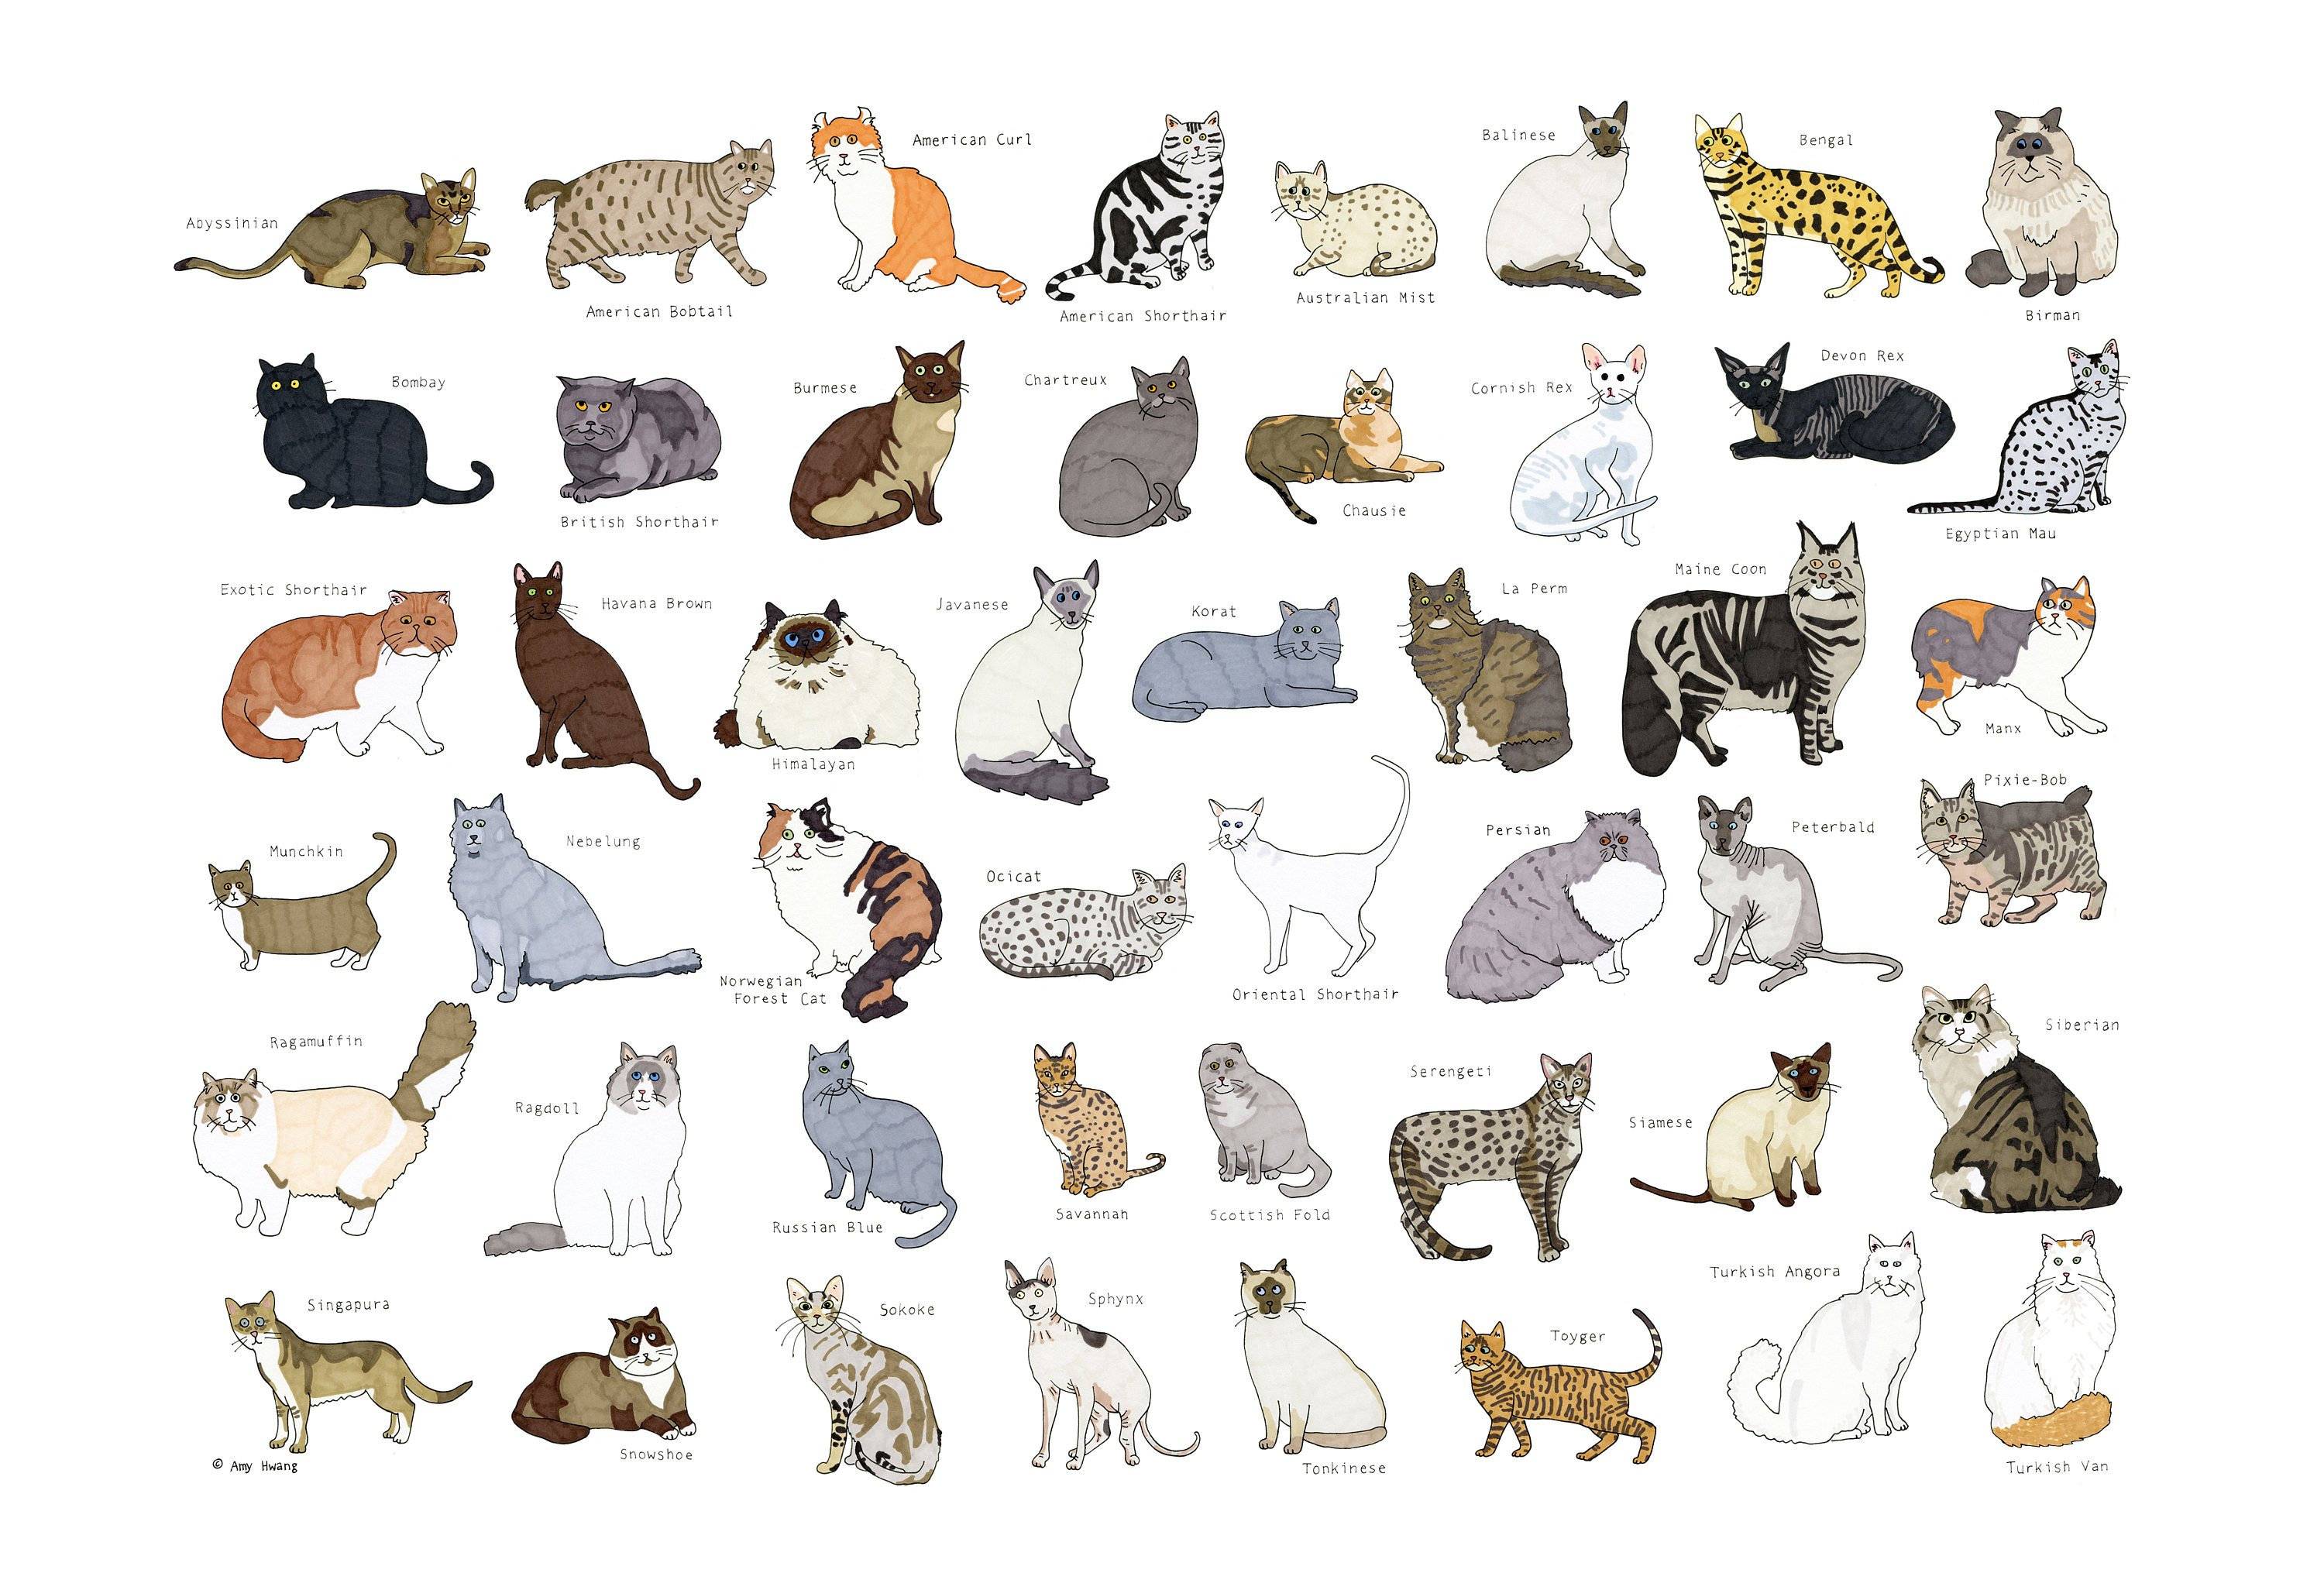 Генетика - определение окрасов будущих котят - питомник элитных британских кошек, котят elite british